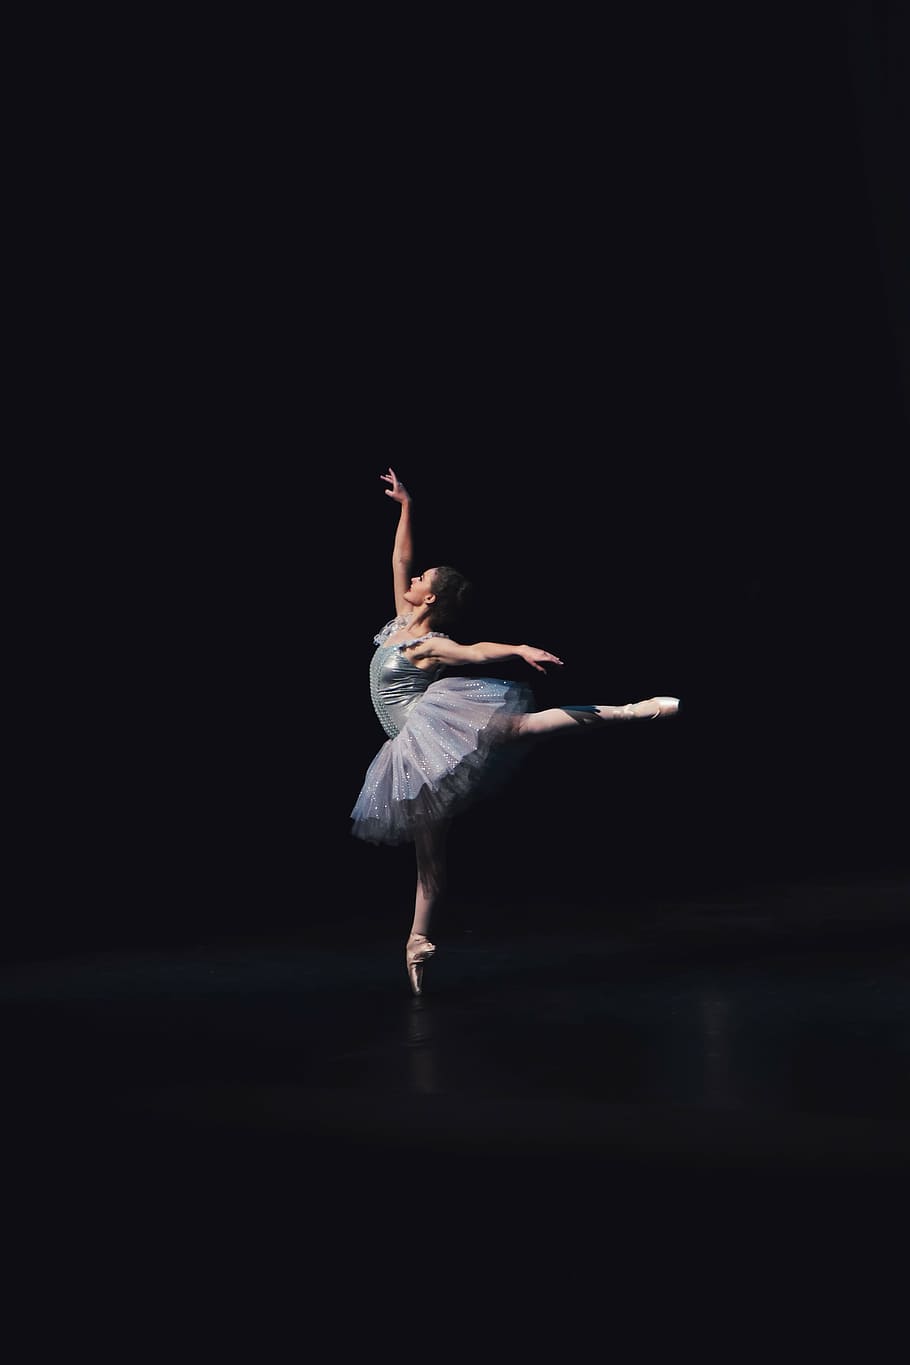 балерина танцует в помещении, балет, танец, люди, девушка, балерина, талант, танцы, темно, сцена